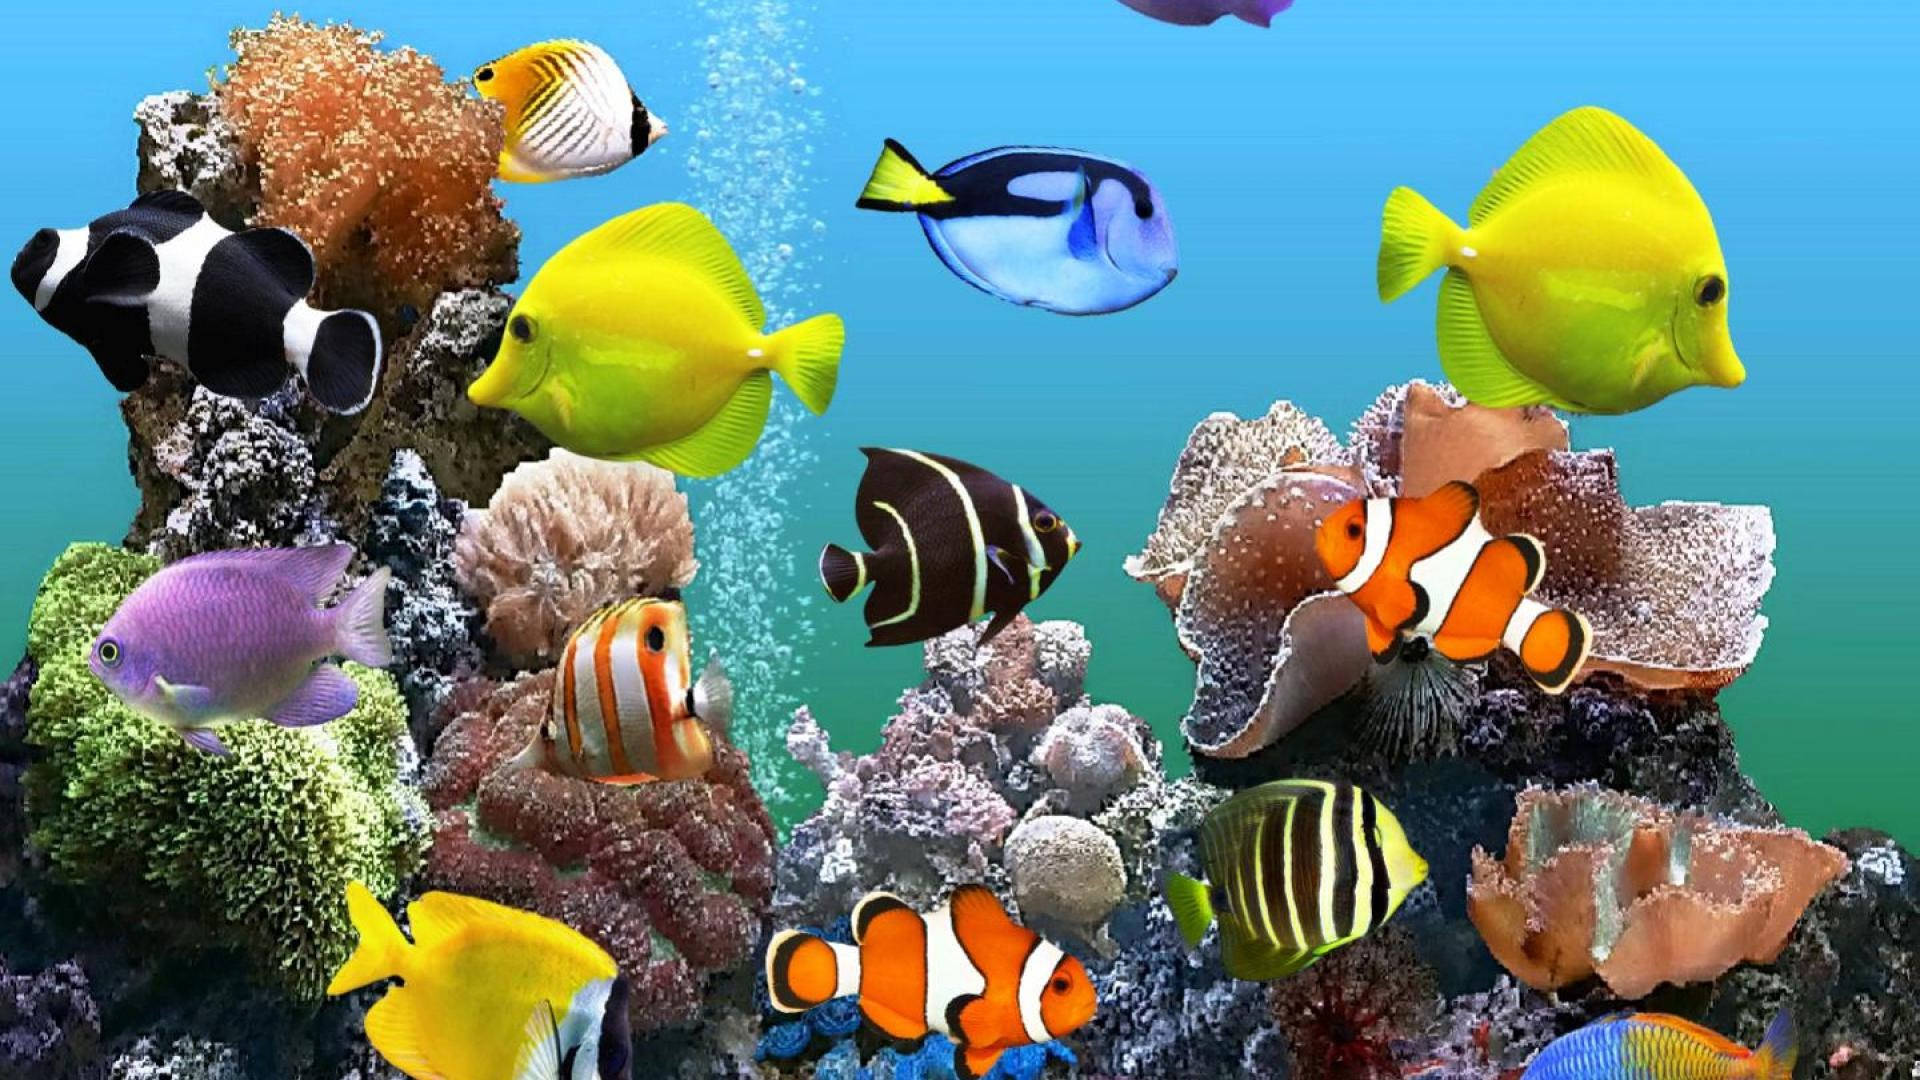 Hdfische Schwimmen Nah An Korallenriffen Wallpaper